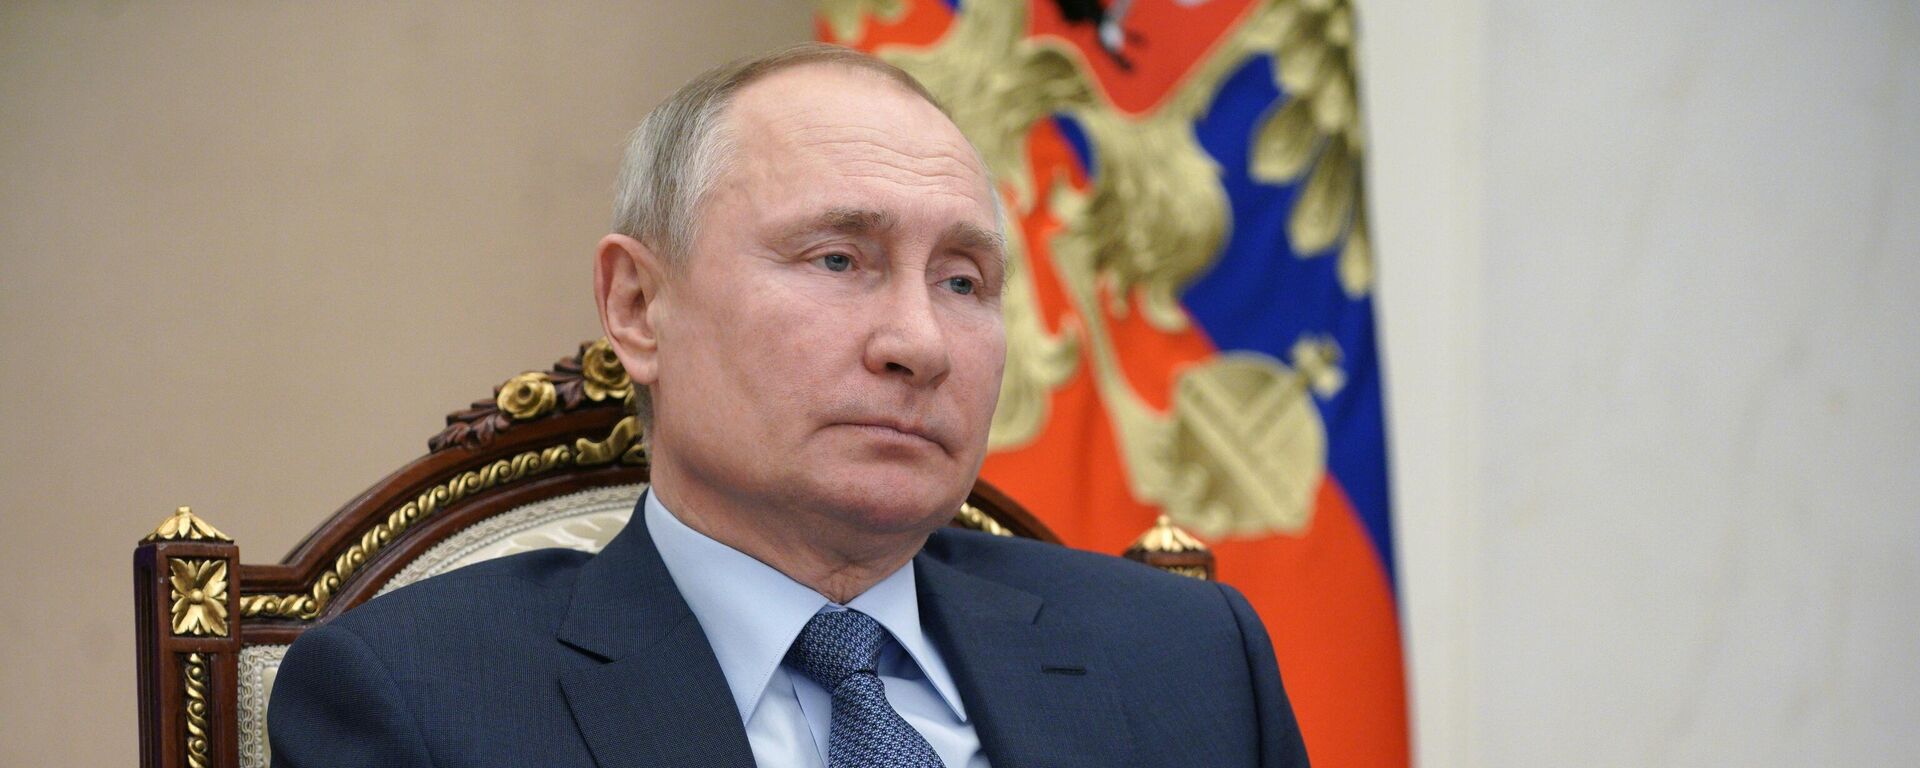 Vladímir Putin, presidente ruso - Sputnik Mundo, 1920, 10.03.2021